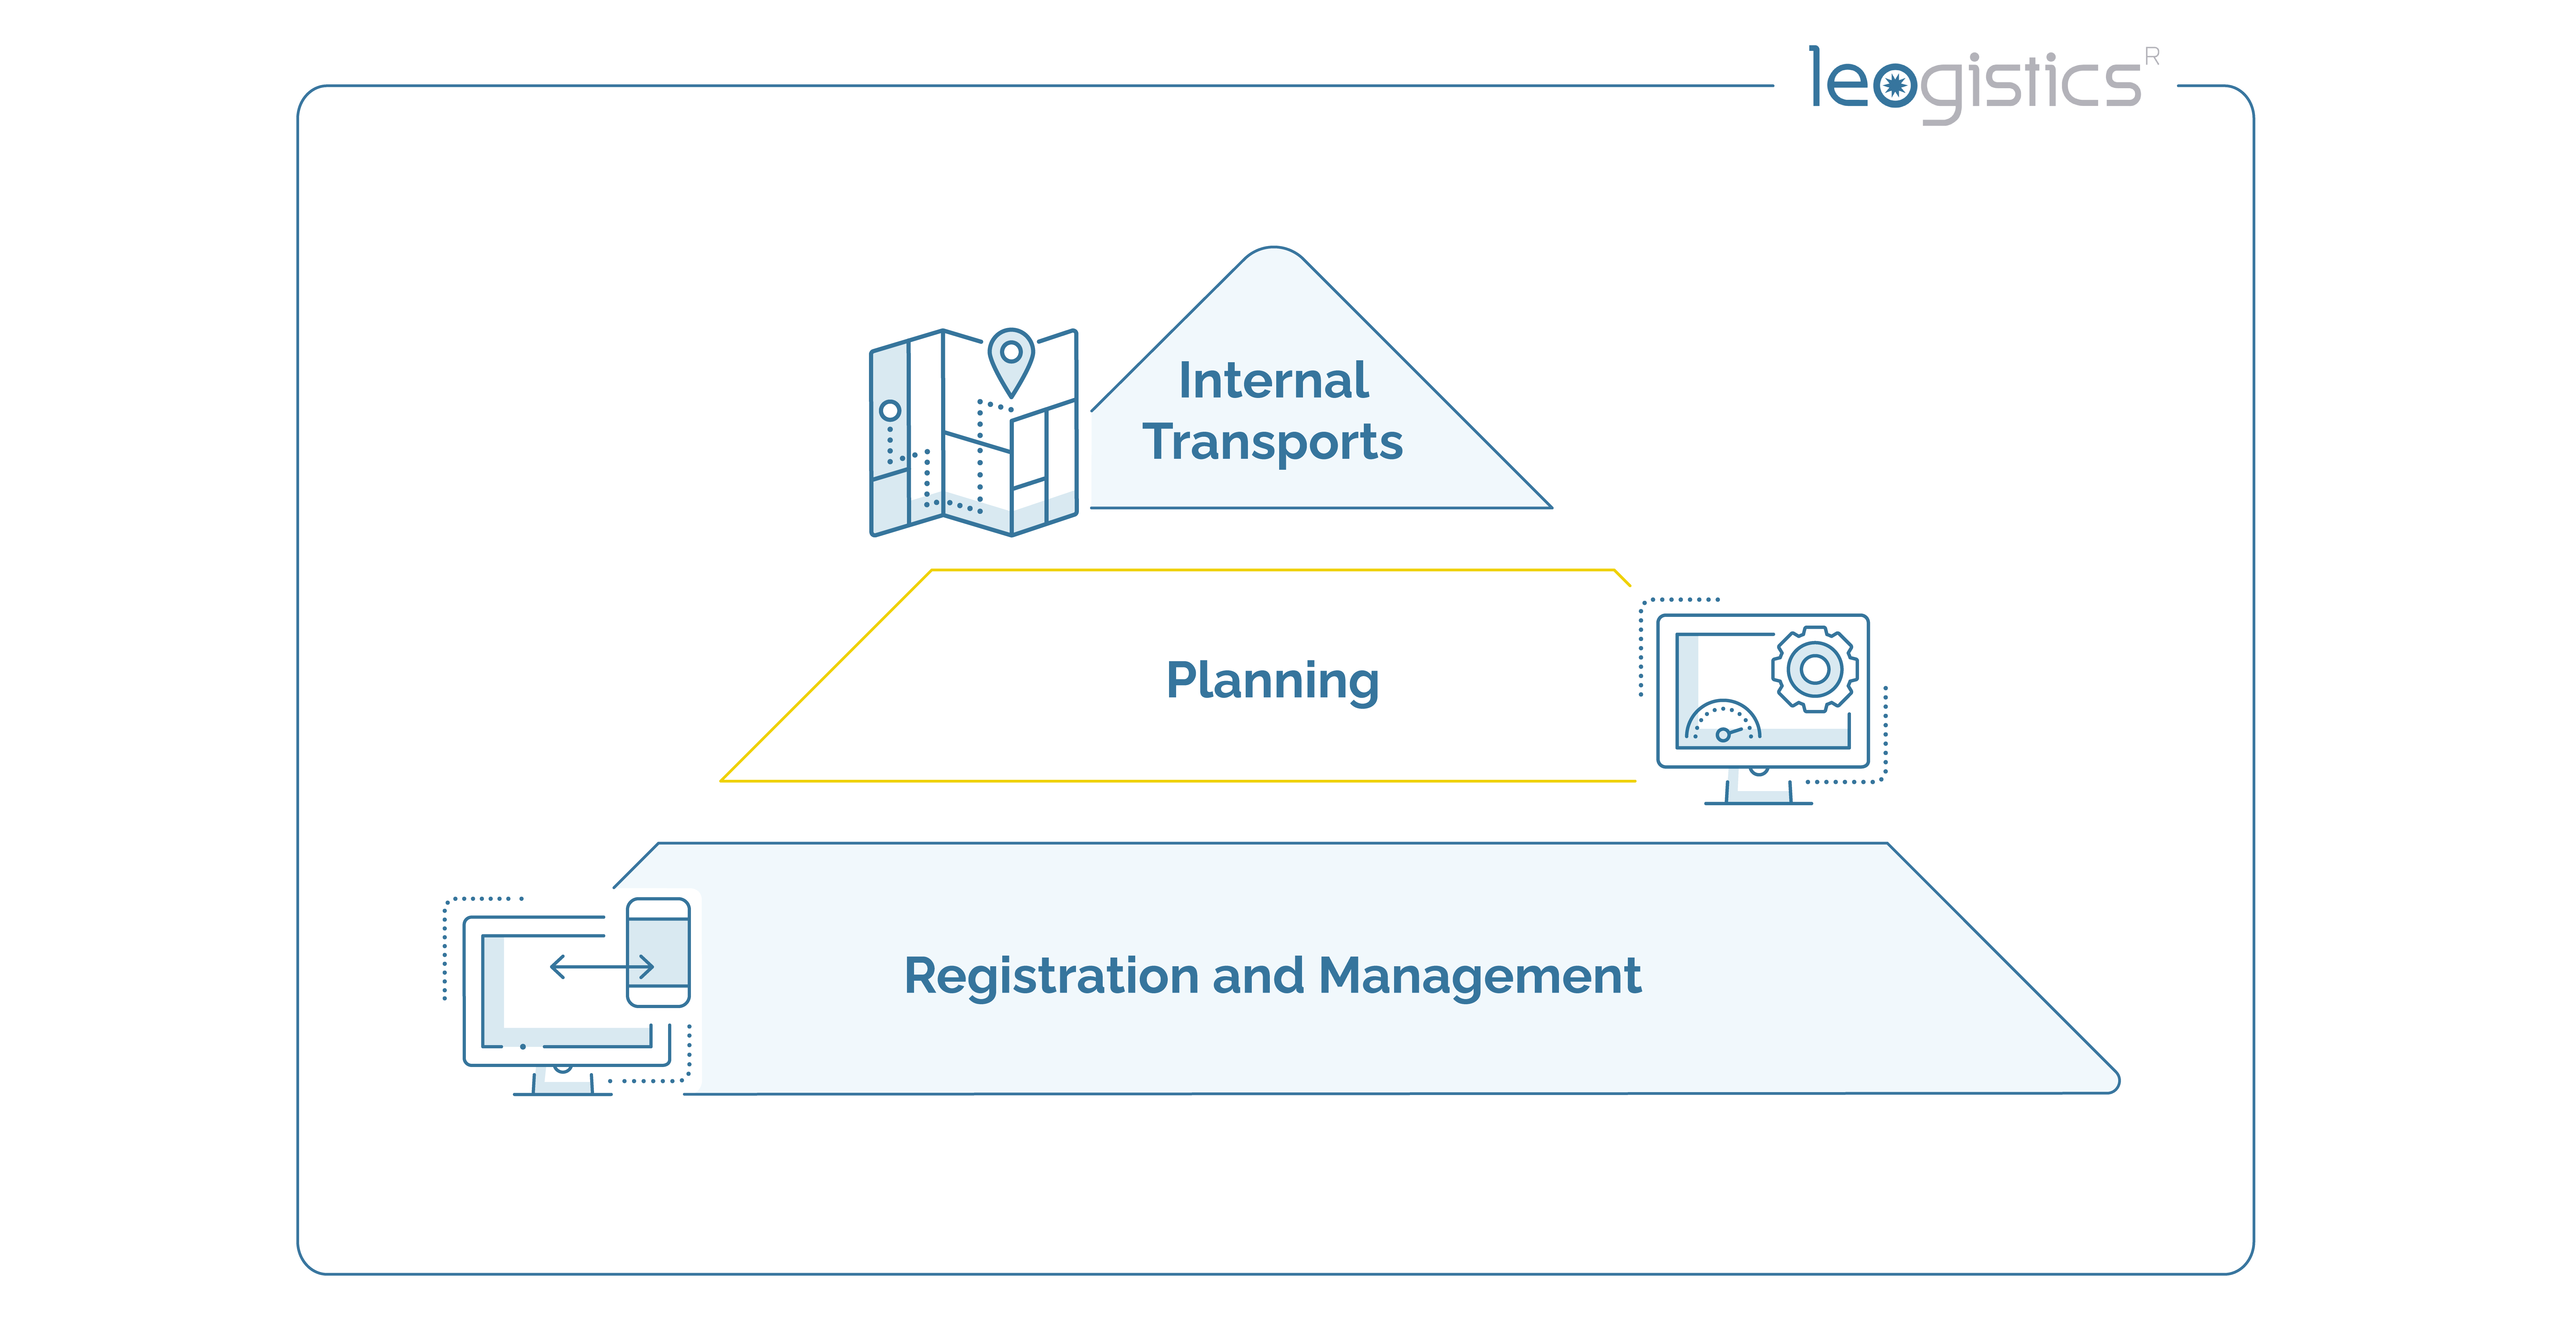 Digital load carrier management: internal transport, planning, registration and management